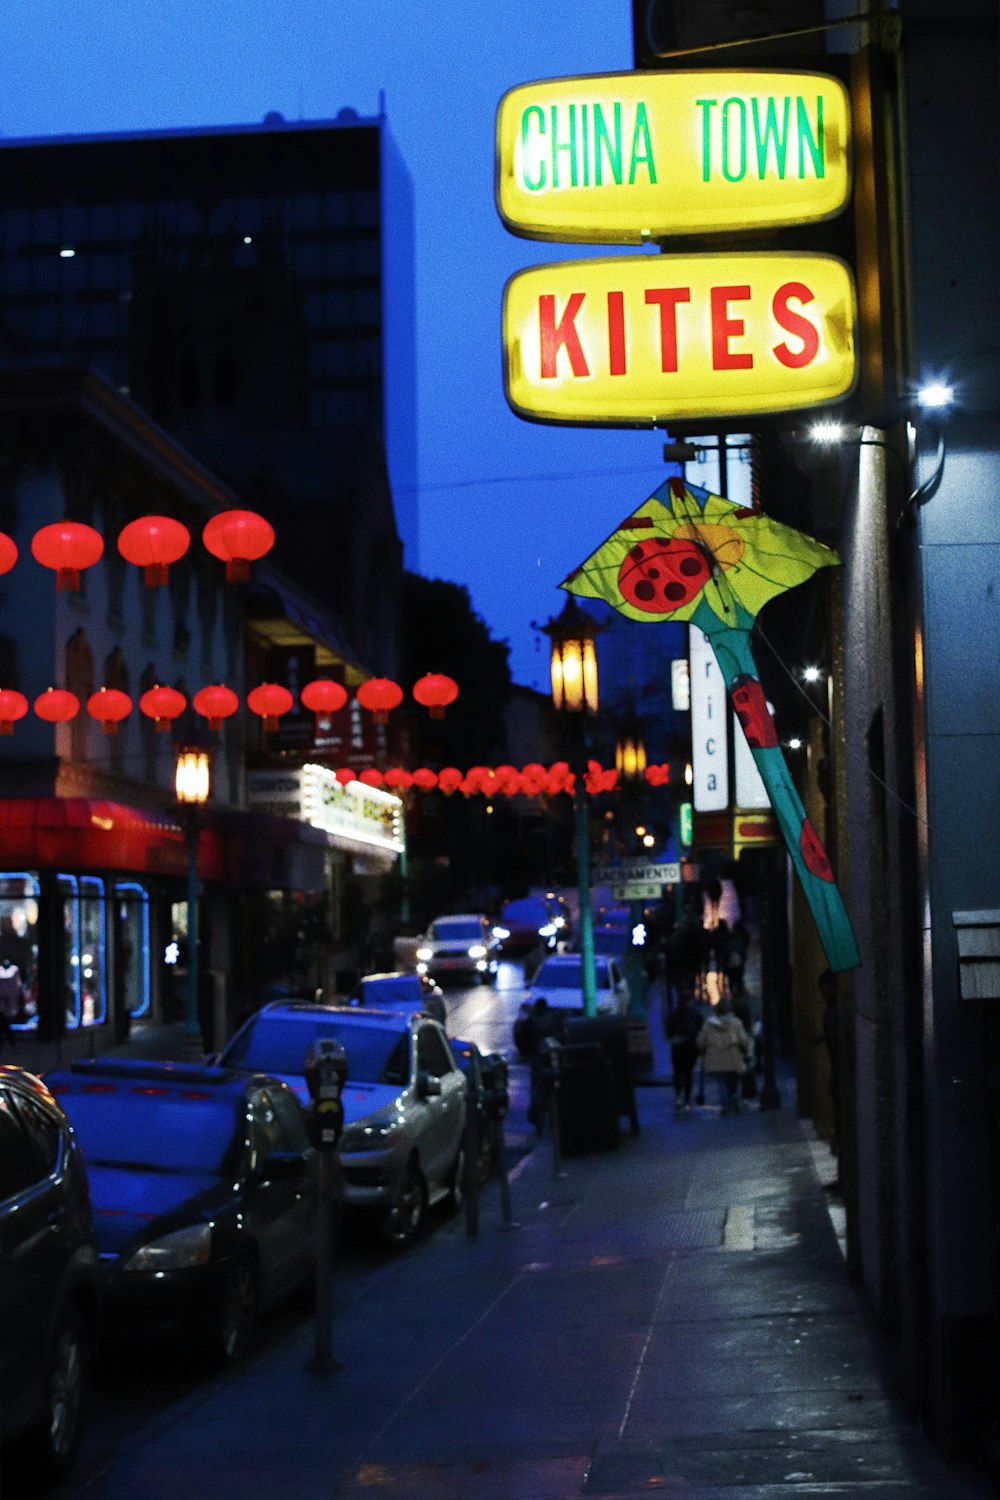 china town kites signage